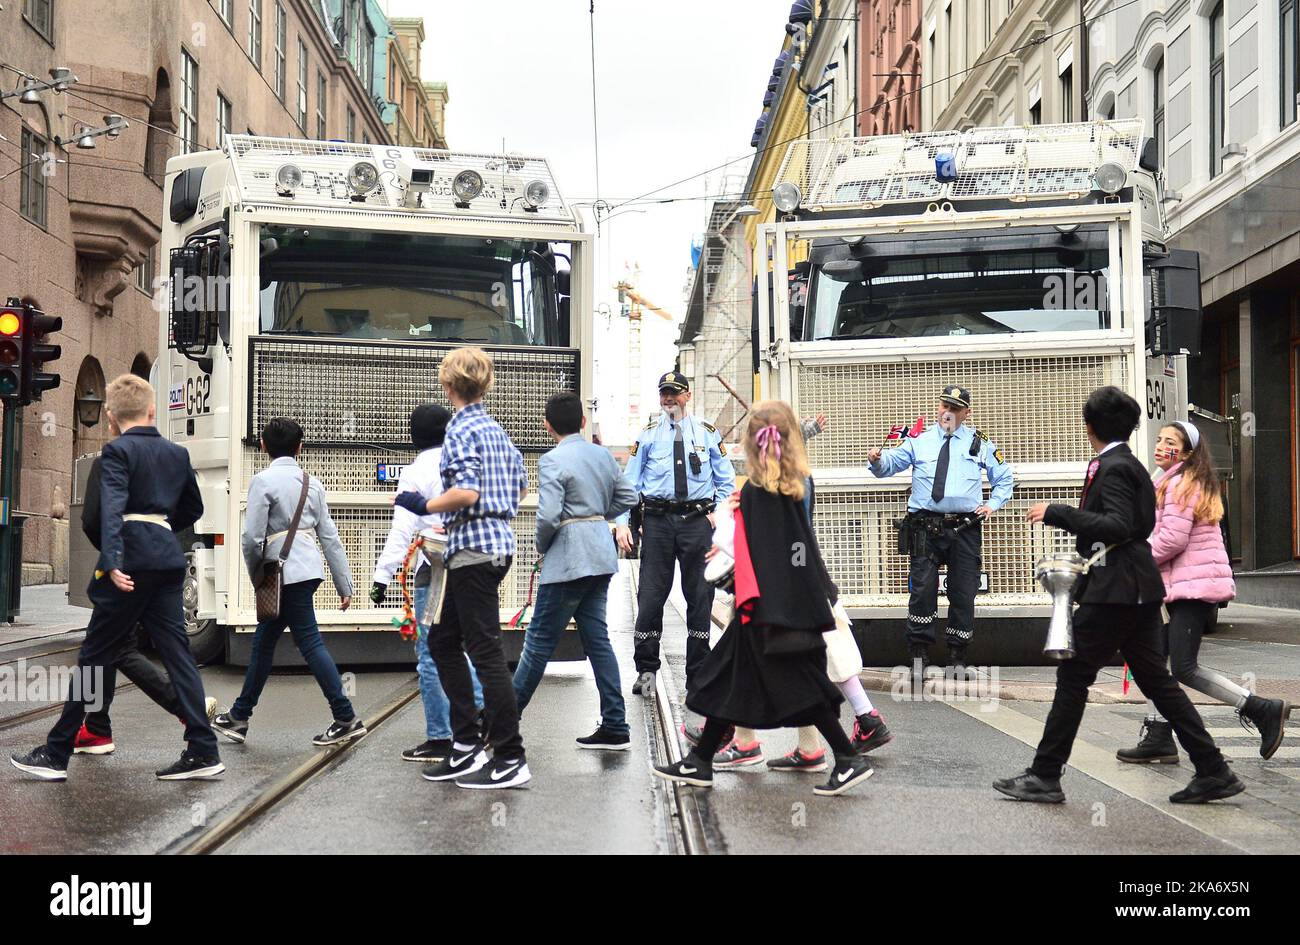 Oslo, Norvège 20170517. Jour de la Constitution norvégienne. Des mesures de sécurité supplémentaires ont été mises en place autour du défilé des enfants dans le centre d'Oslo le 17 mai. La police a fermé une rue avec deux gros camions. Photo: Fredrik Varfjell / NTB scanpix Banque D'Images